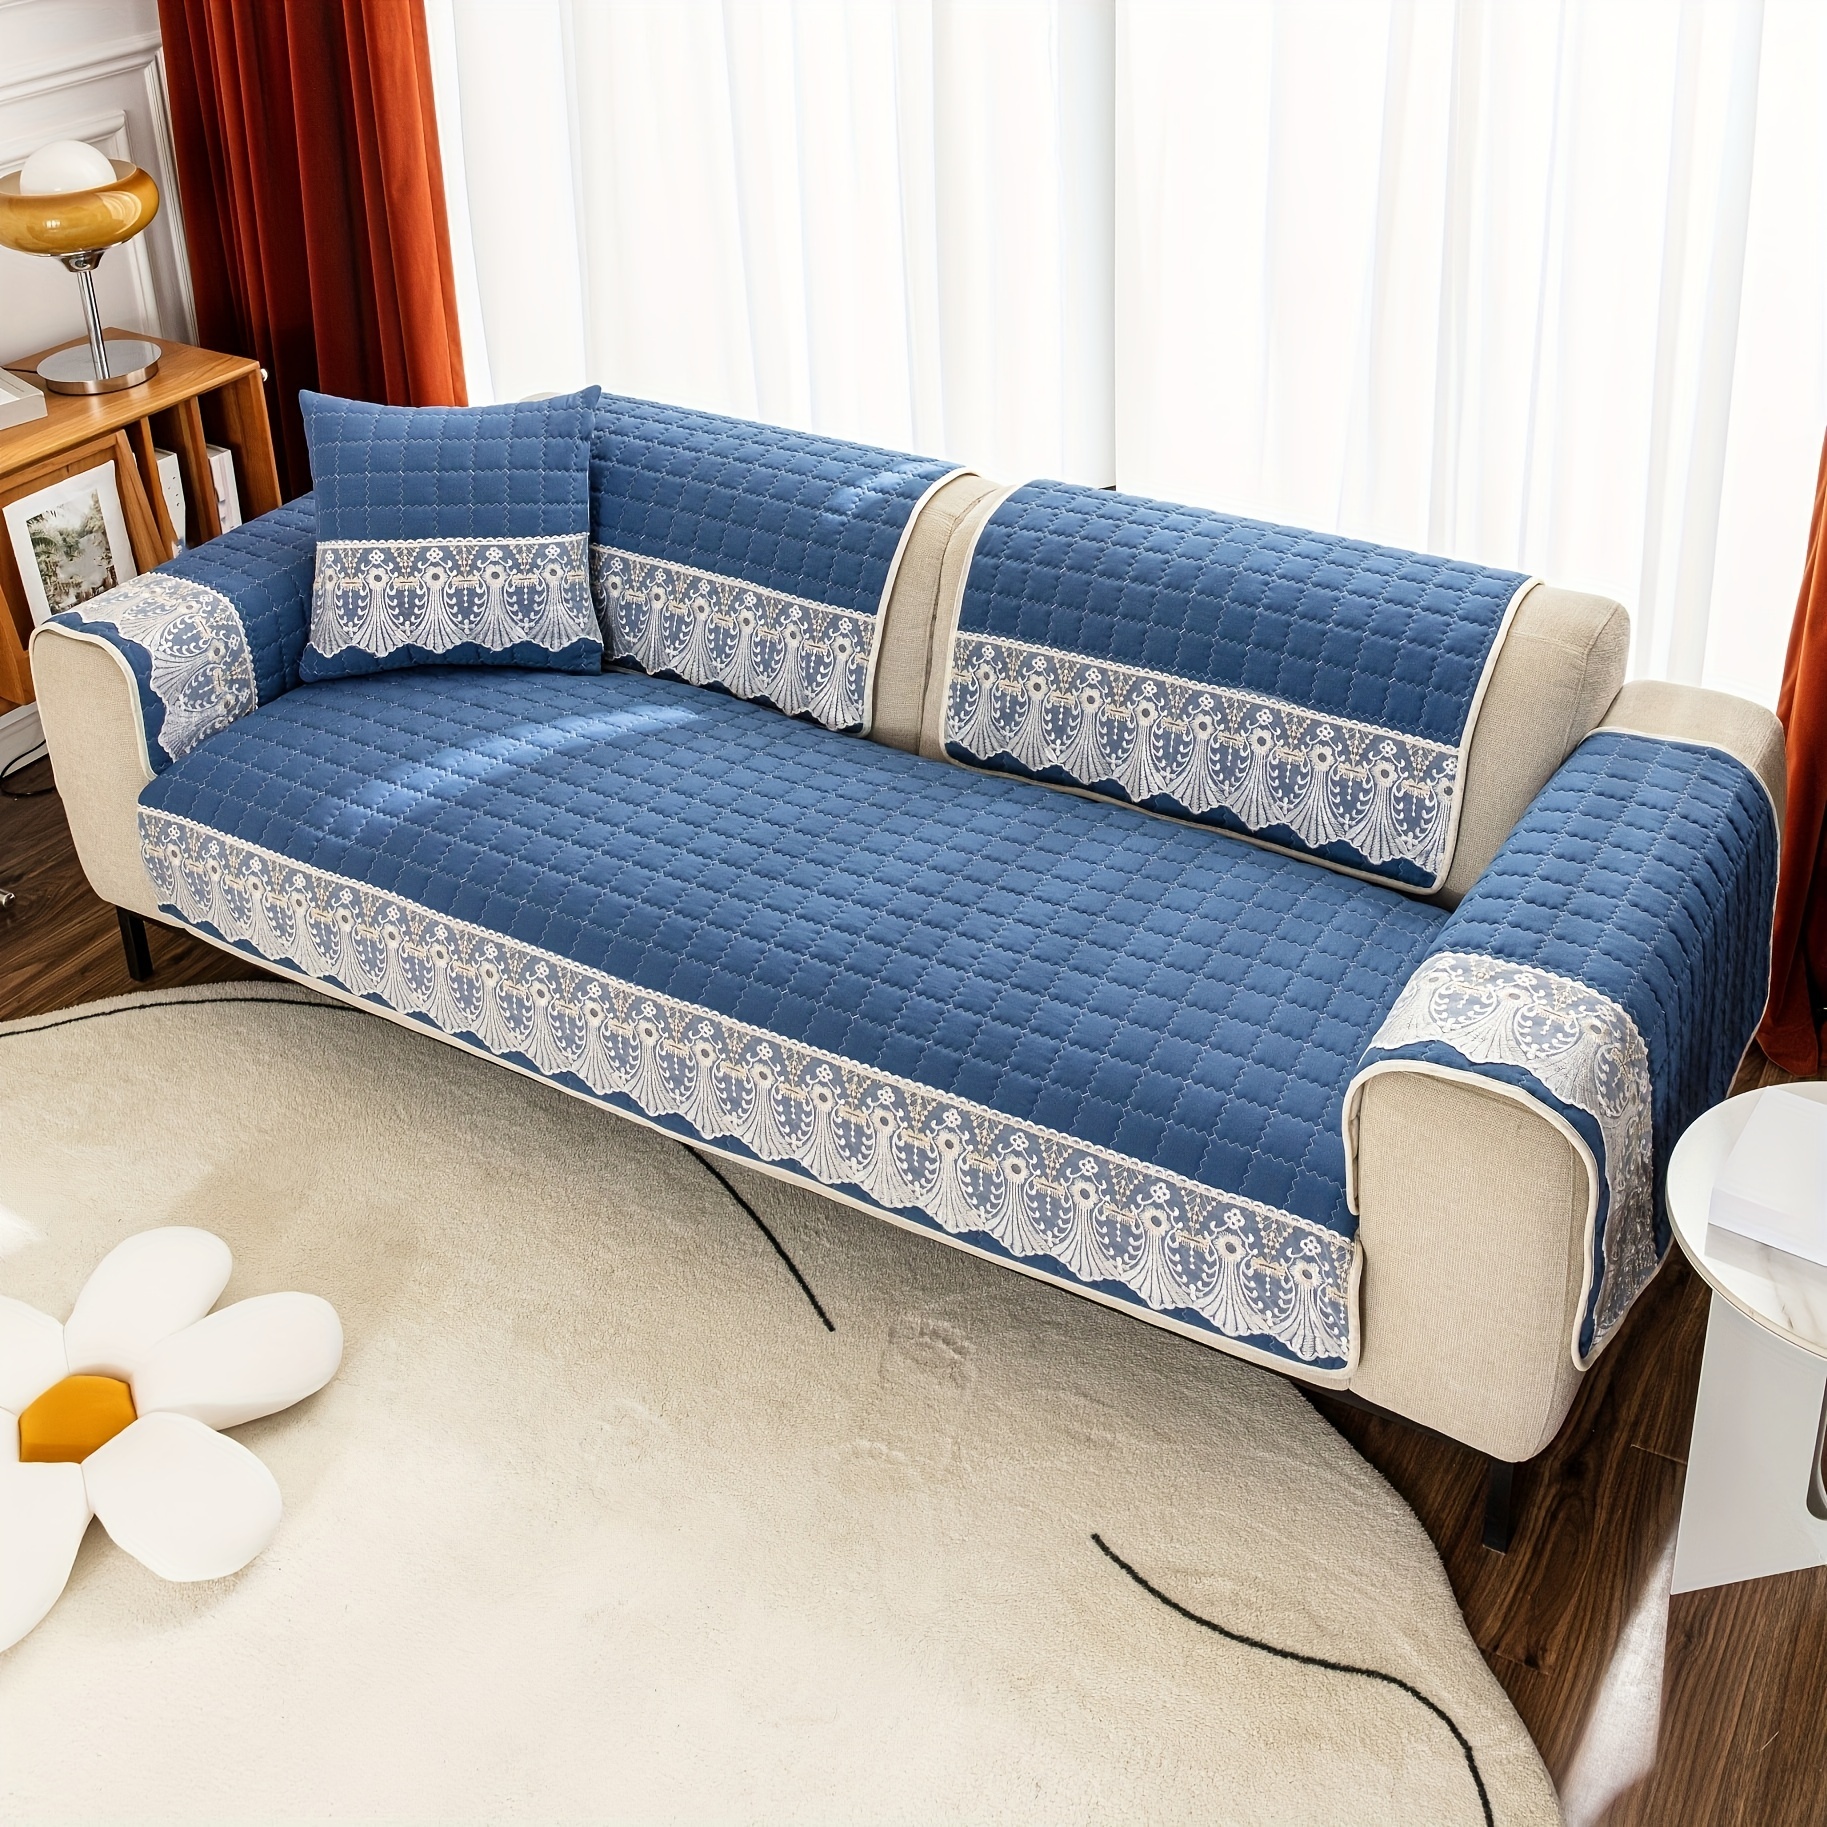  N&V Sofá de espuma de un solo asiento, sofá de suelo sin  brazos, espuma de alta densidad de una pieza, funda extraíble y lavable a  máquina, azul : Hogar y Cocina